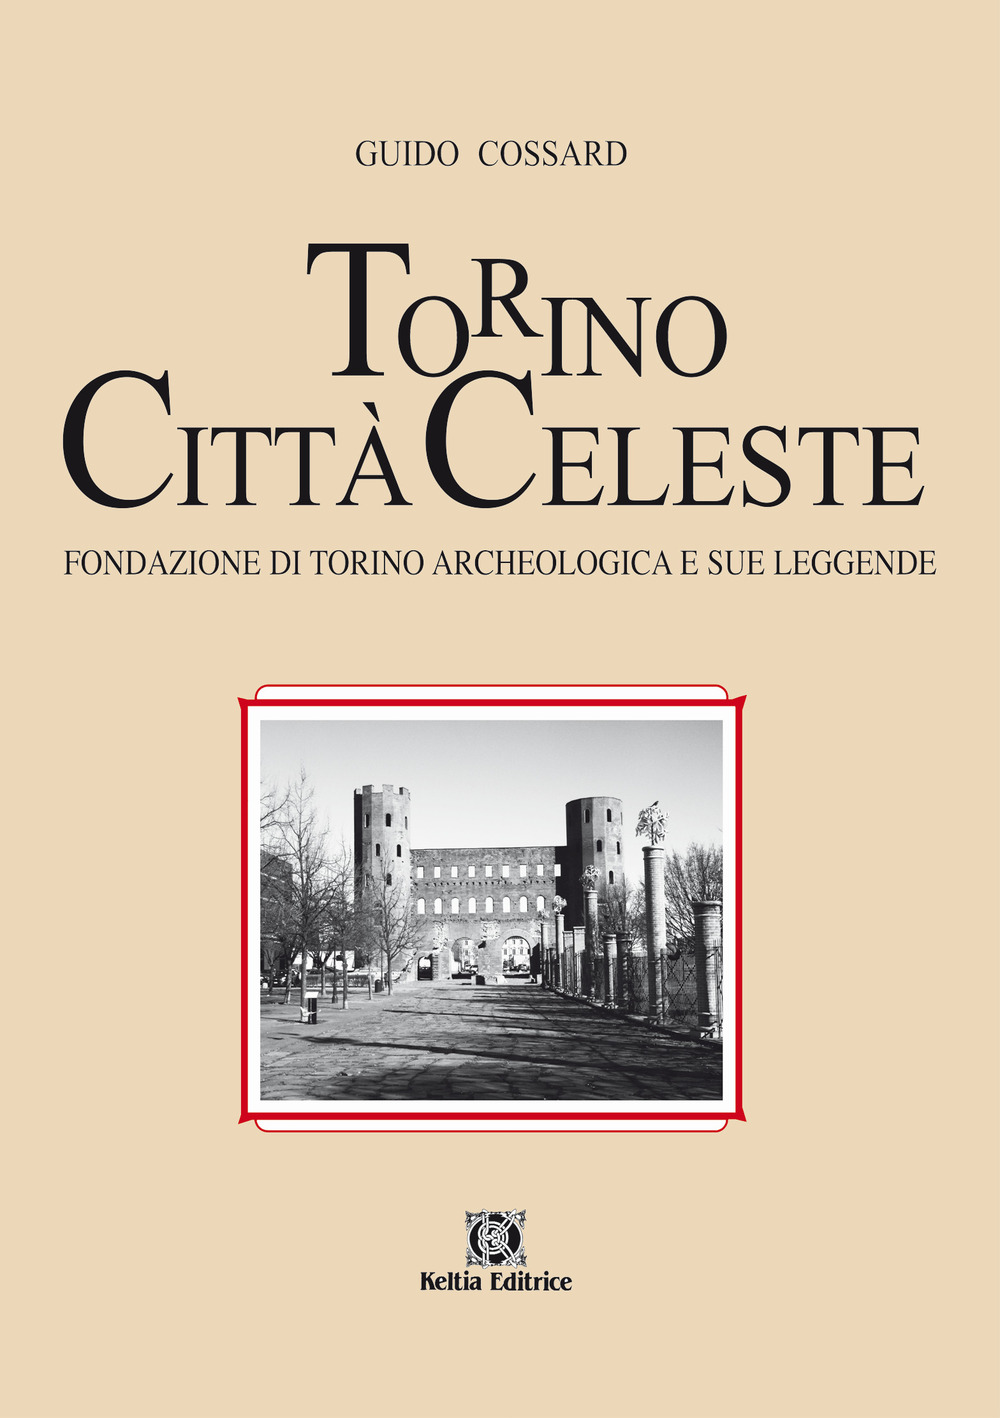 Torino città celeste. Fondazione di Torino archeologica e sue leggende